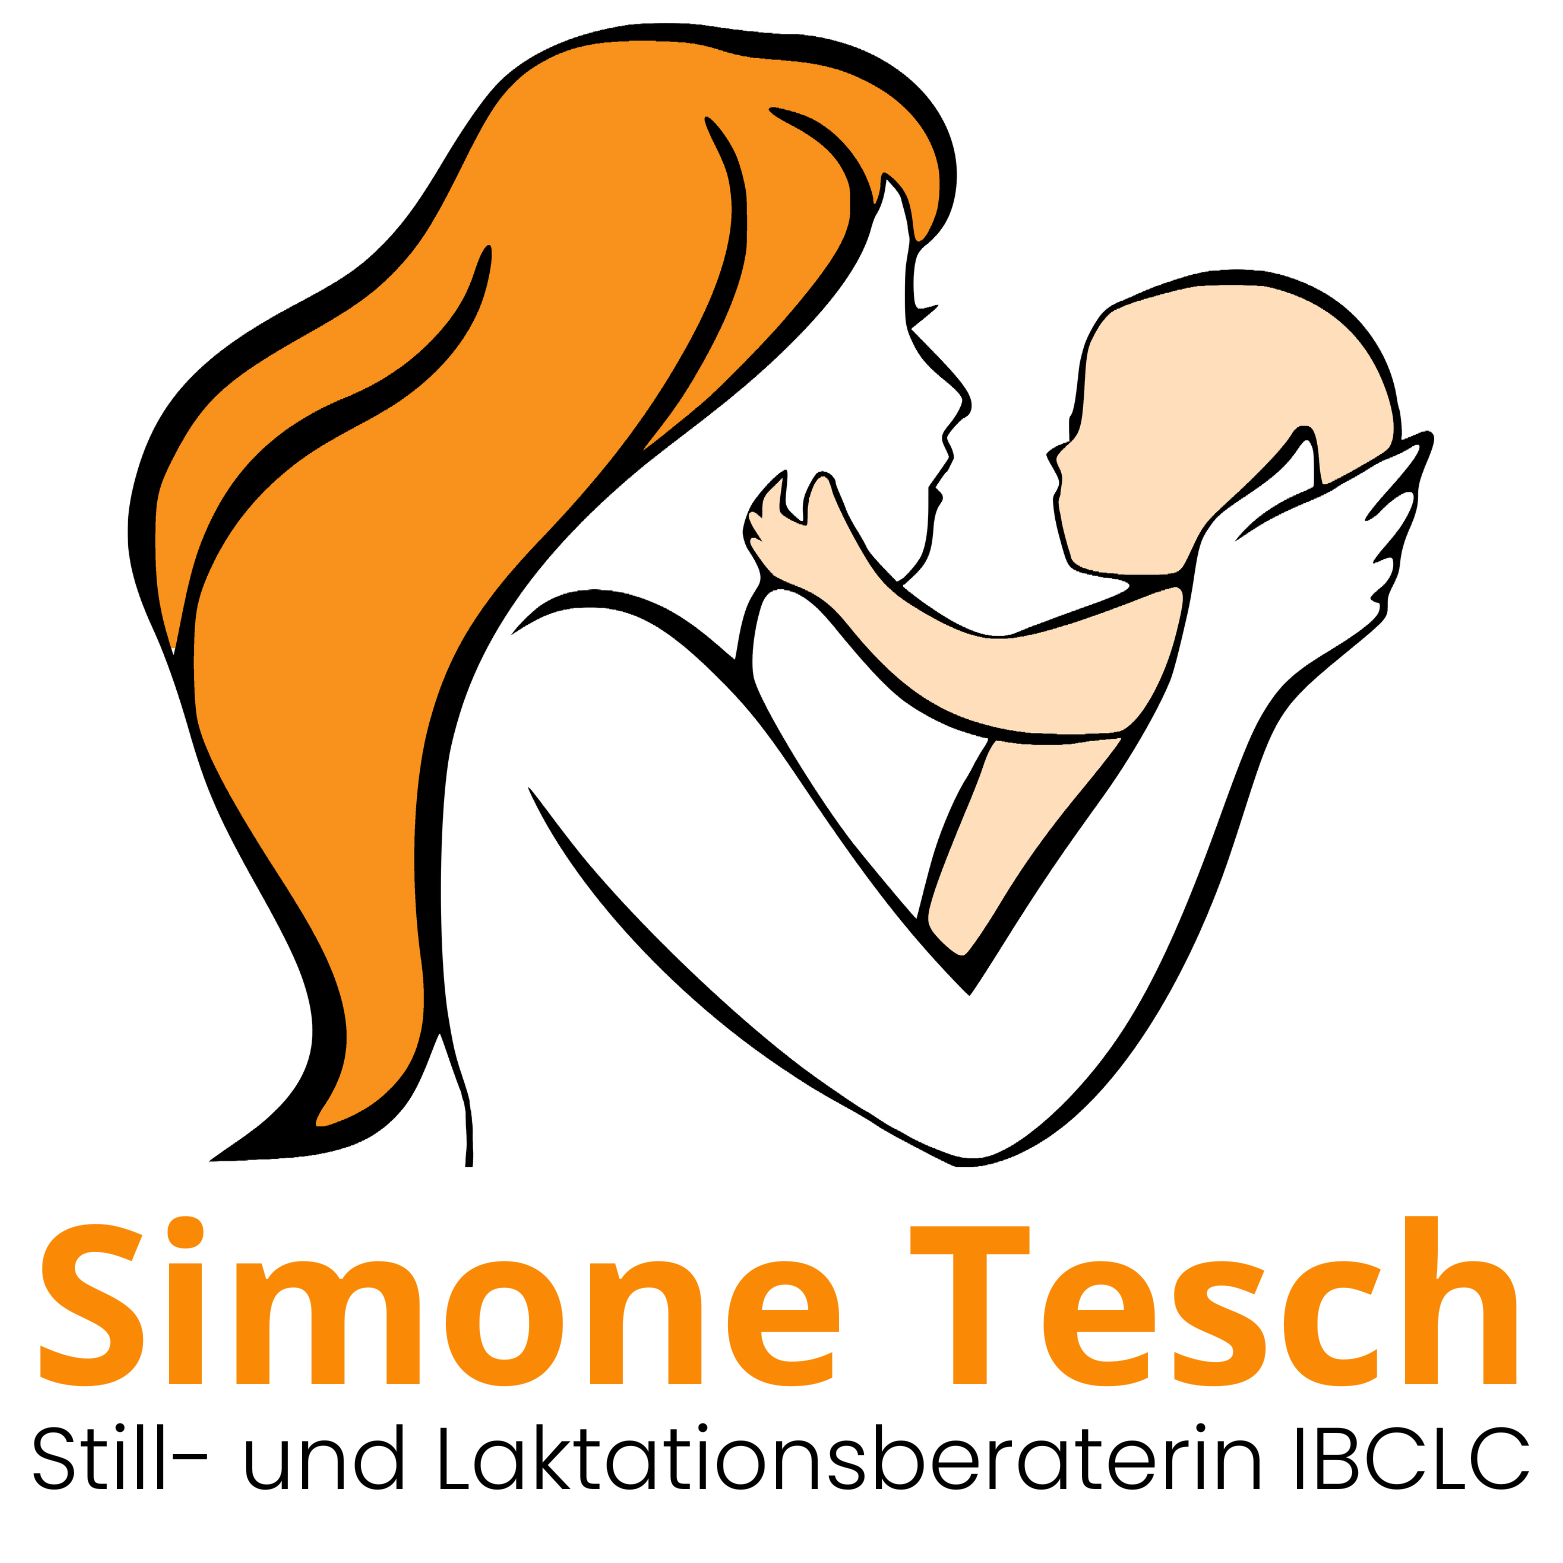 (c) Simone-tesch.com